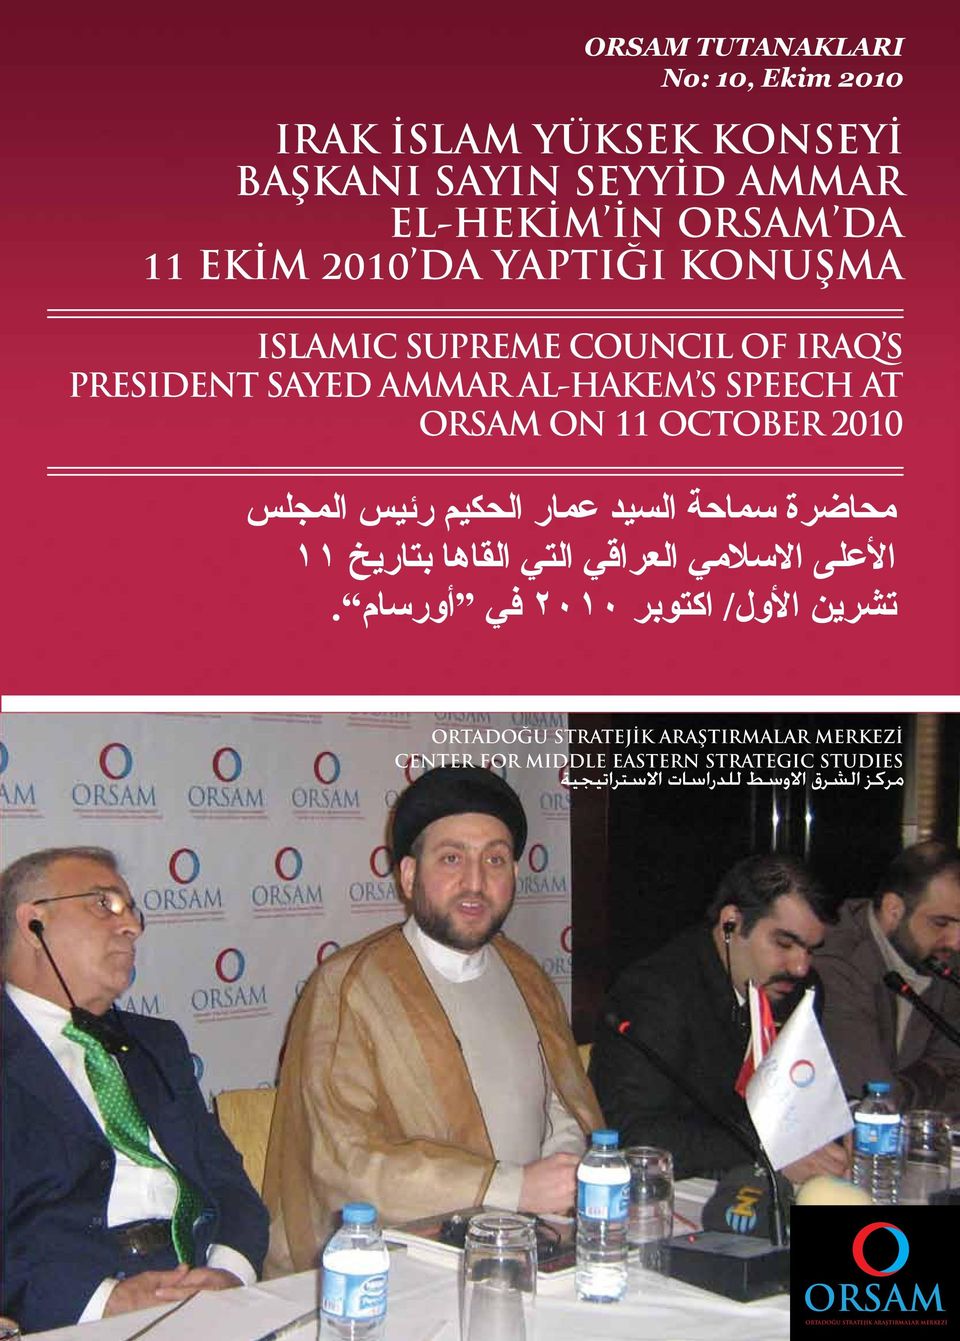 سماحة السيد عمار الحكيم رئيس المجلس األعلى االسالمي العراقي التي القاها بتاريخ 11 تشرين األول/ اكتوبر 2010 في أورسام.